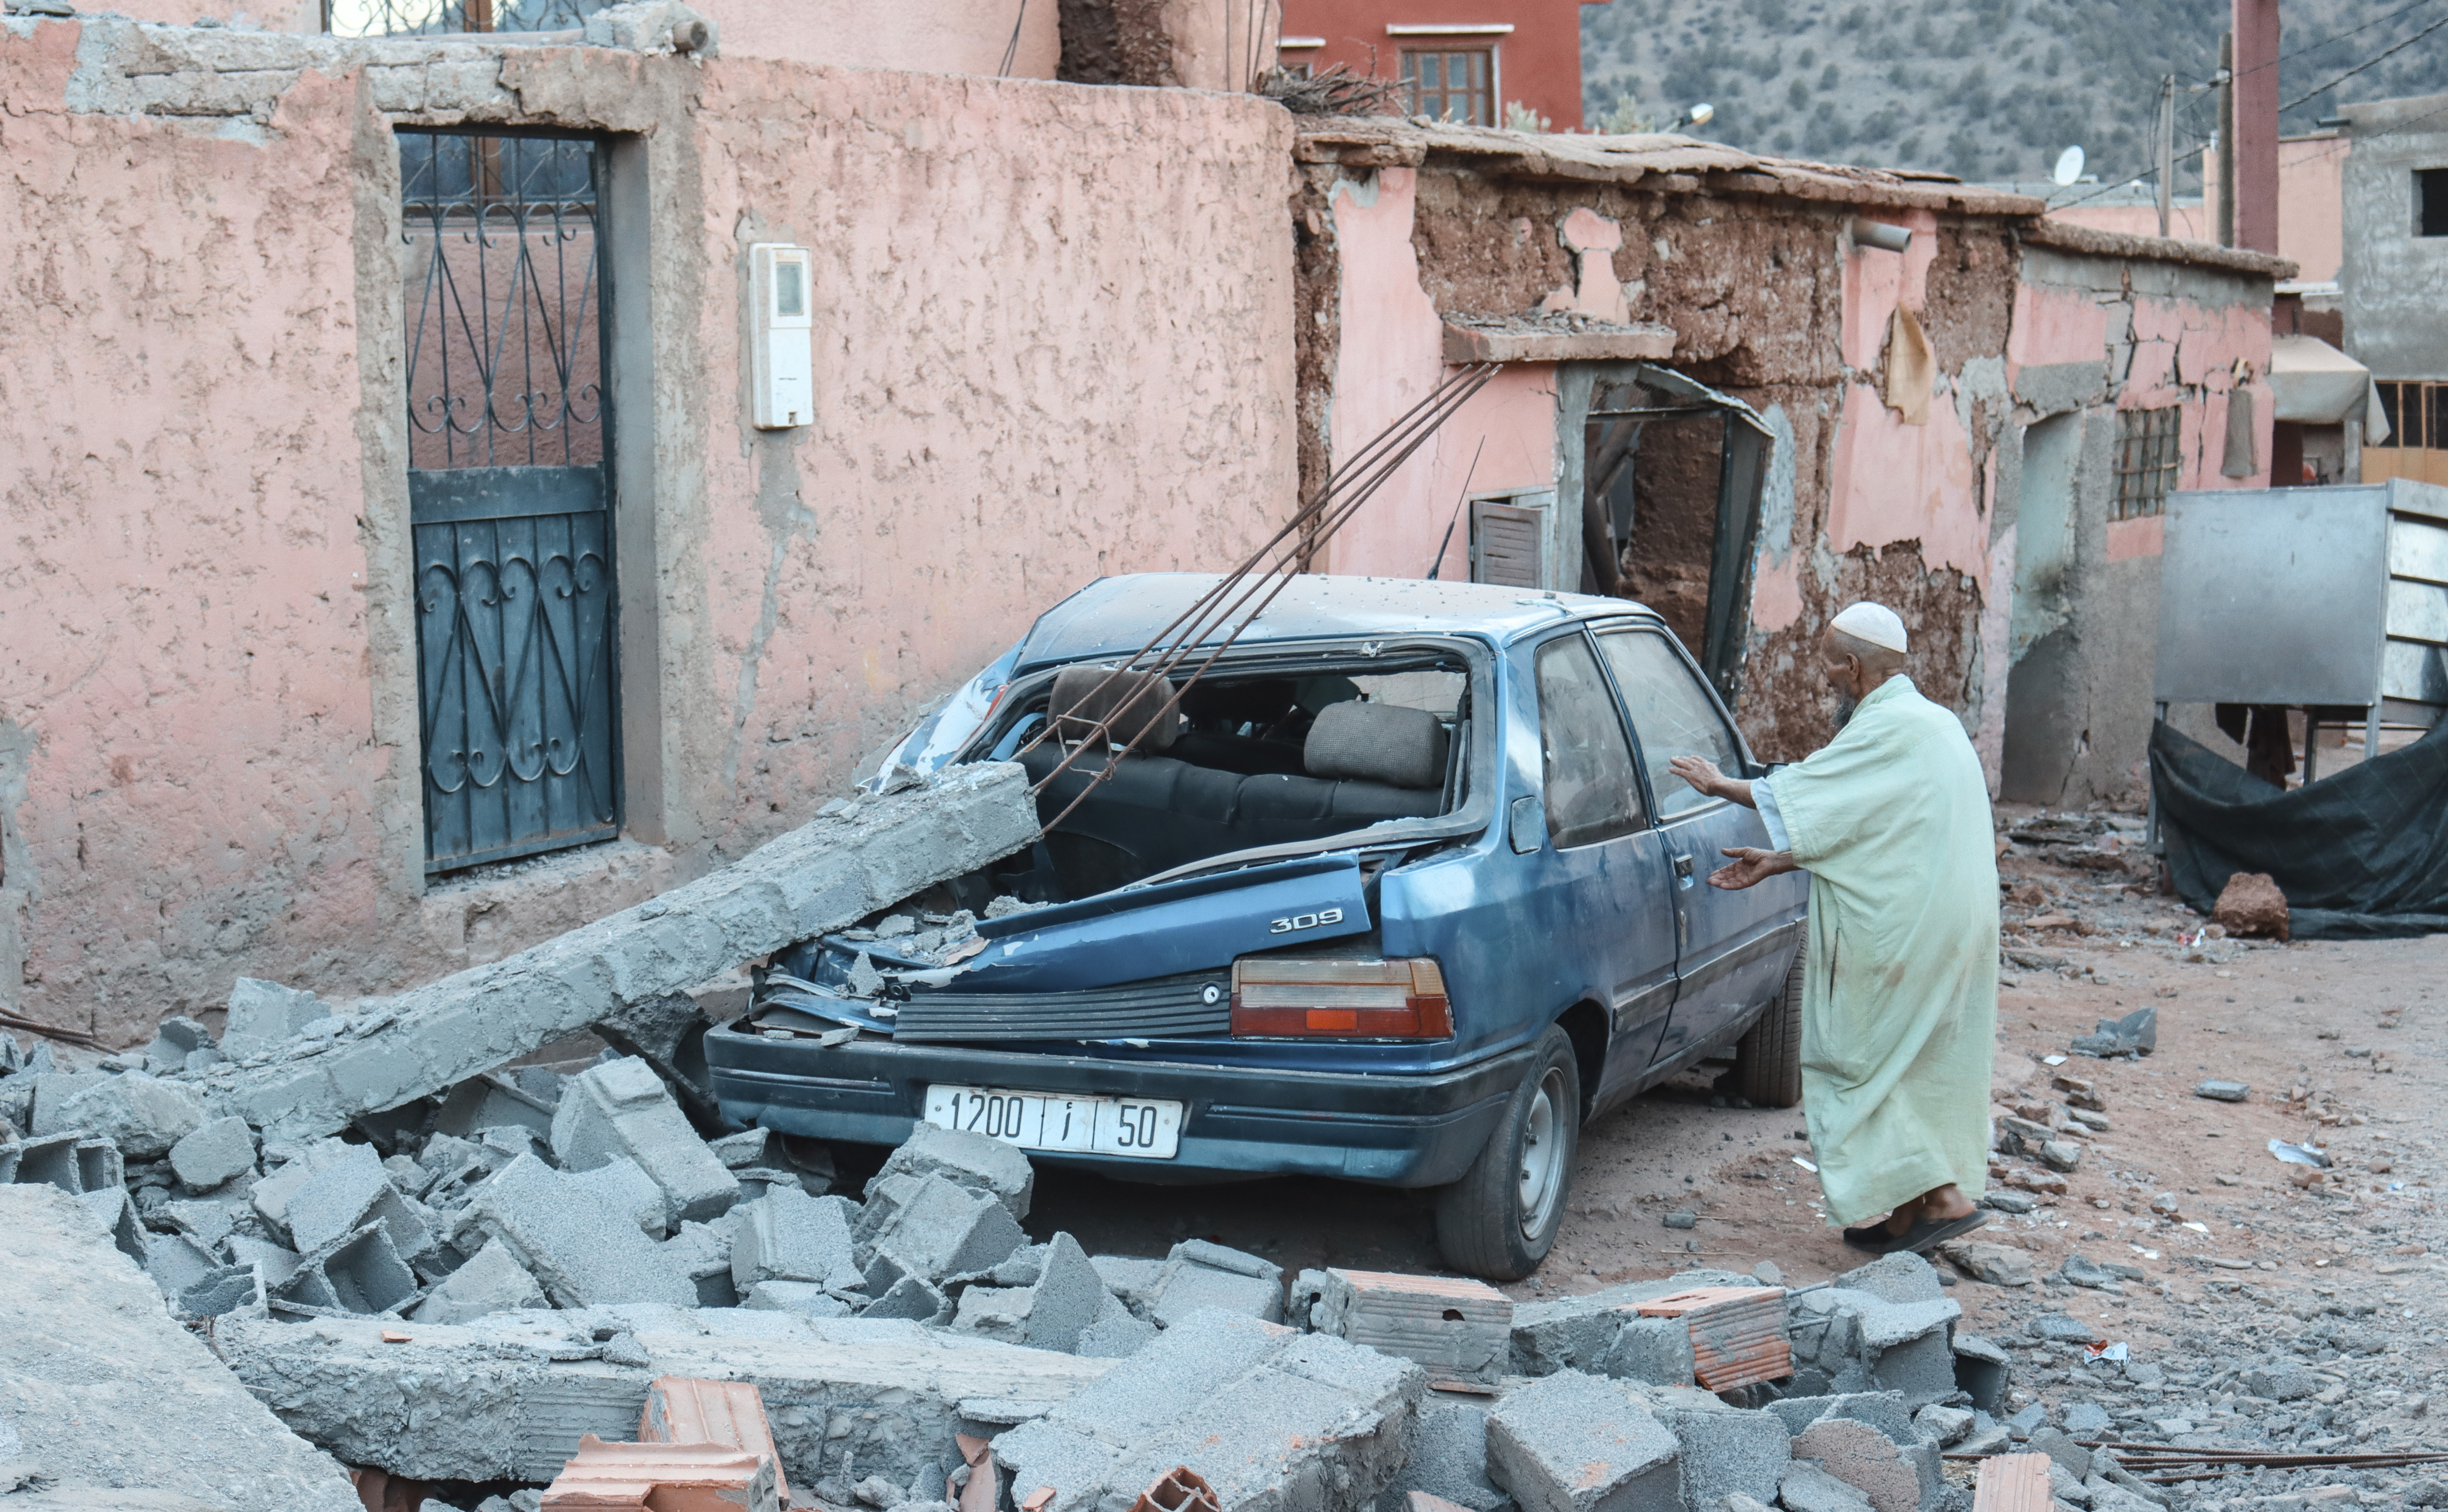 La sociedad civil lleva el peso de la ayuda tras el terremoto: “No sabemos cómo atender a los heridos”